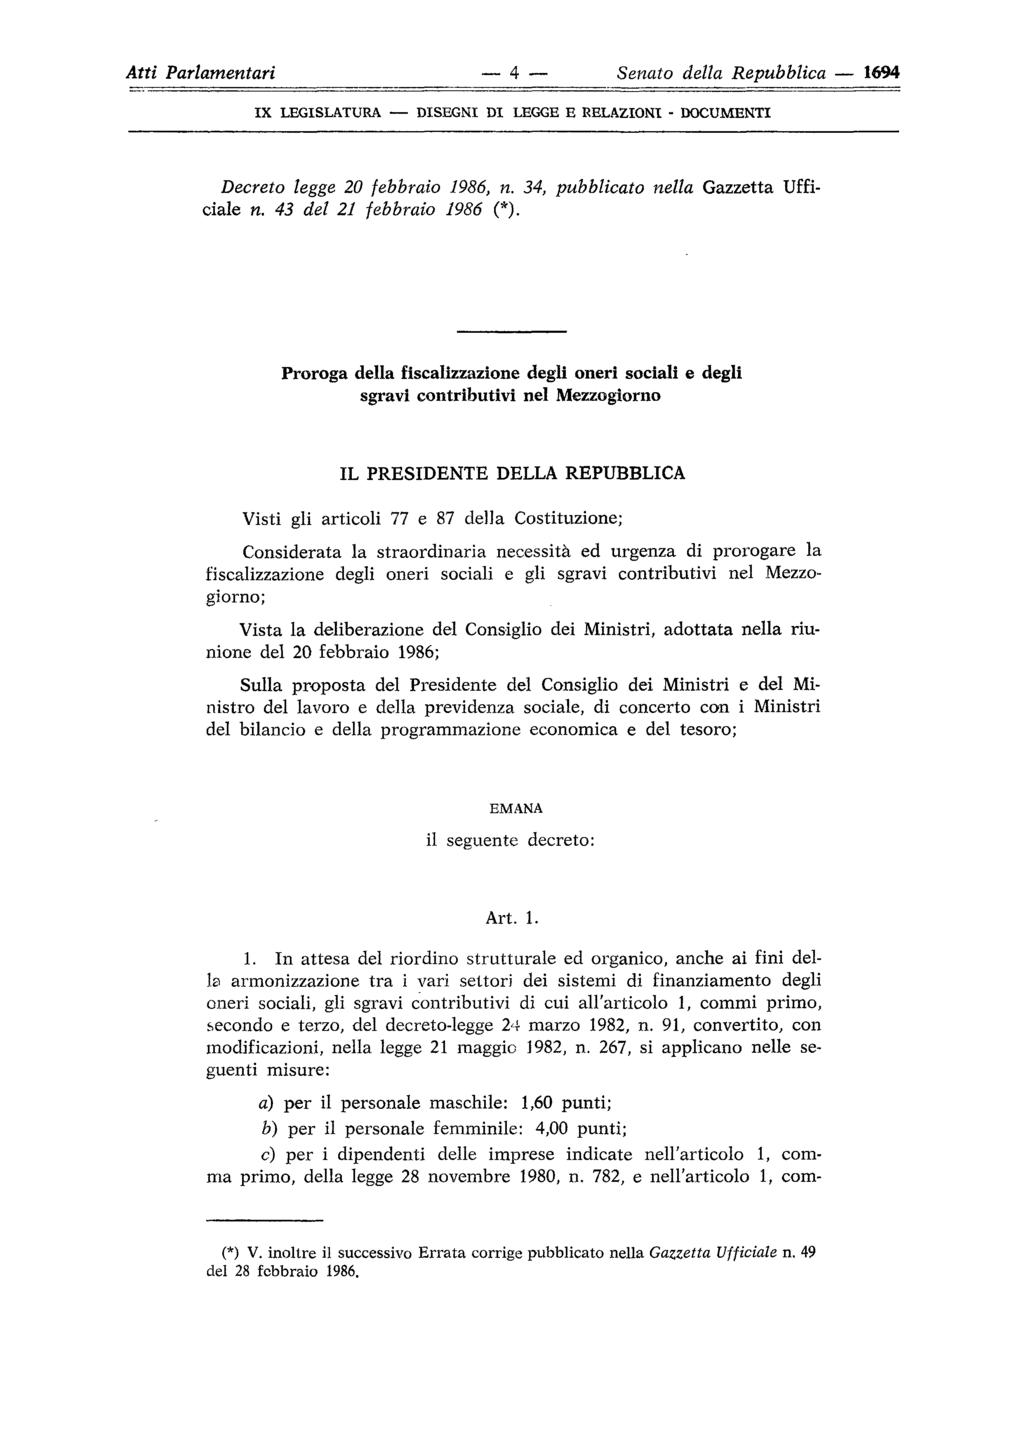 Atti Parlamentari 4 Senato della Repubblica 1694 ix LEGISLATURA DISEGNI DI LEGGE E RELAZIONI - DOCUMENTI Decreto legge 20 febbraio 1986, n. 34, pubblicato nella Gazzetta Ufficiale n.